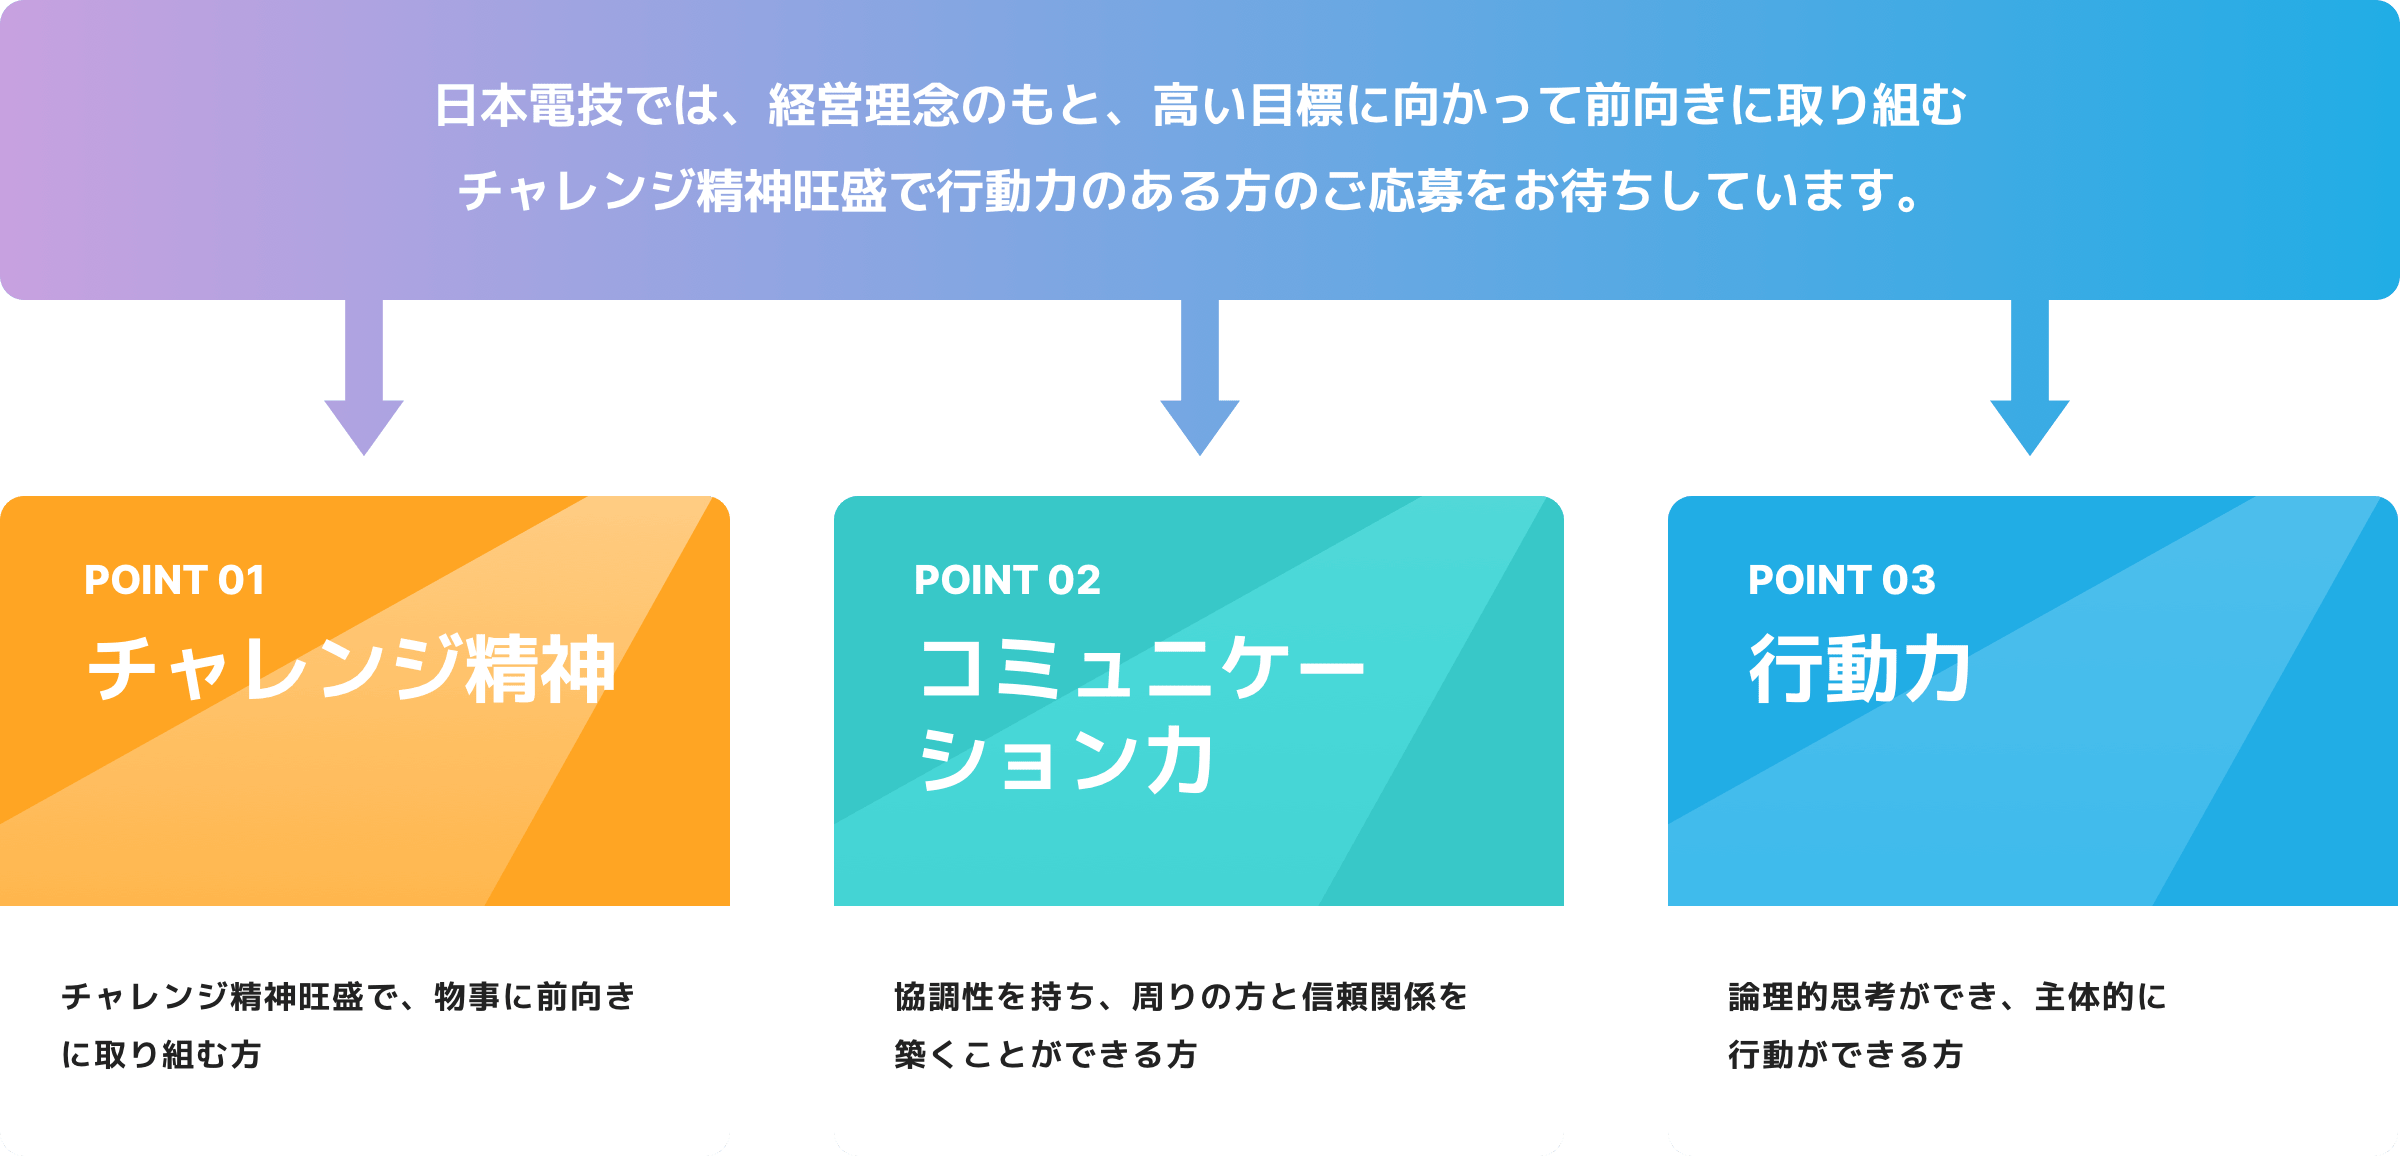 日本電技では、経営理念のもと、高い目標に向かって前向きに取り組むチャレンジ精神旺盛で行動力のある方のご応募をお待ちしています。POINT1 チャレンジ精神：チャレンジ精神旺盛で、物事に前向きに取り組む方　POINT2 コミュニケー
							ション力：協調性を持ち、周りの方と信頼関係を築くことができる方　POINT3 行動力：論理的思考ができ、主体的に行動ができる方